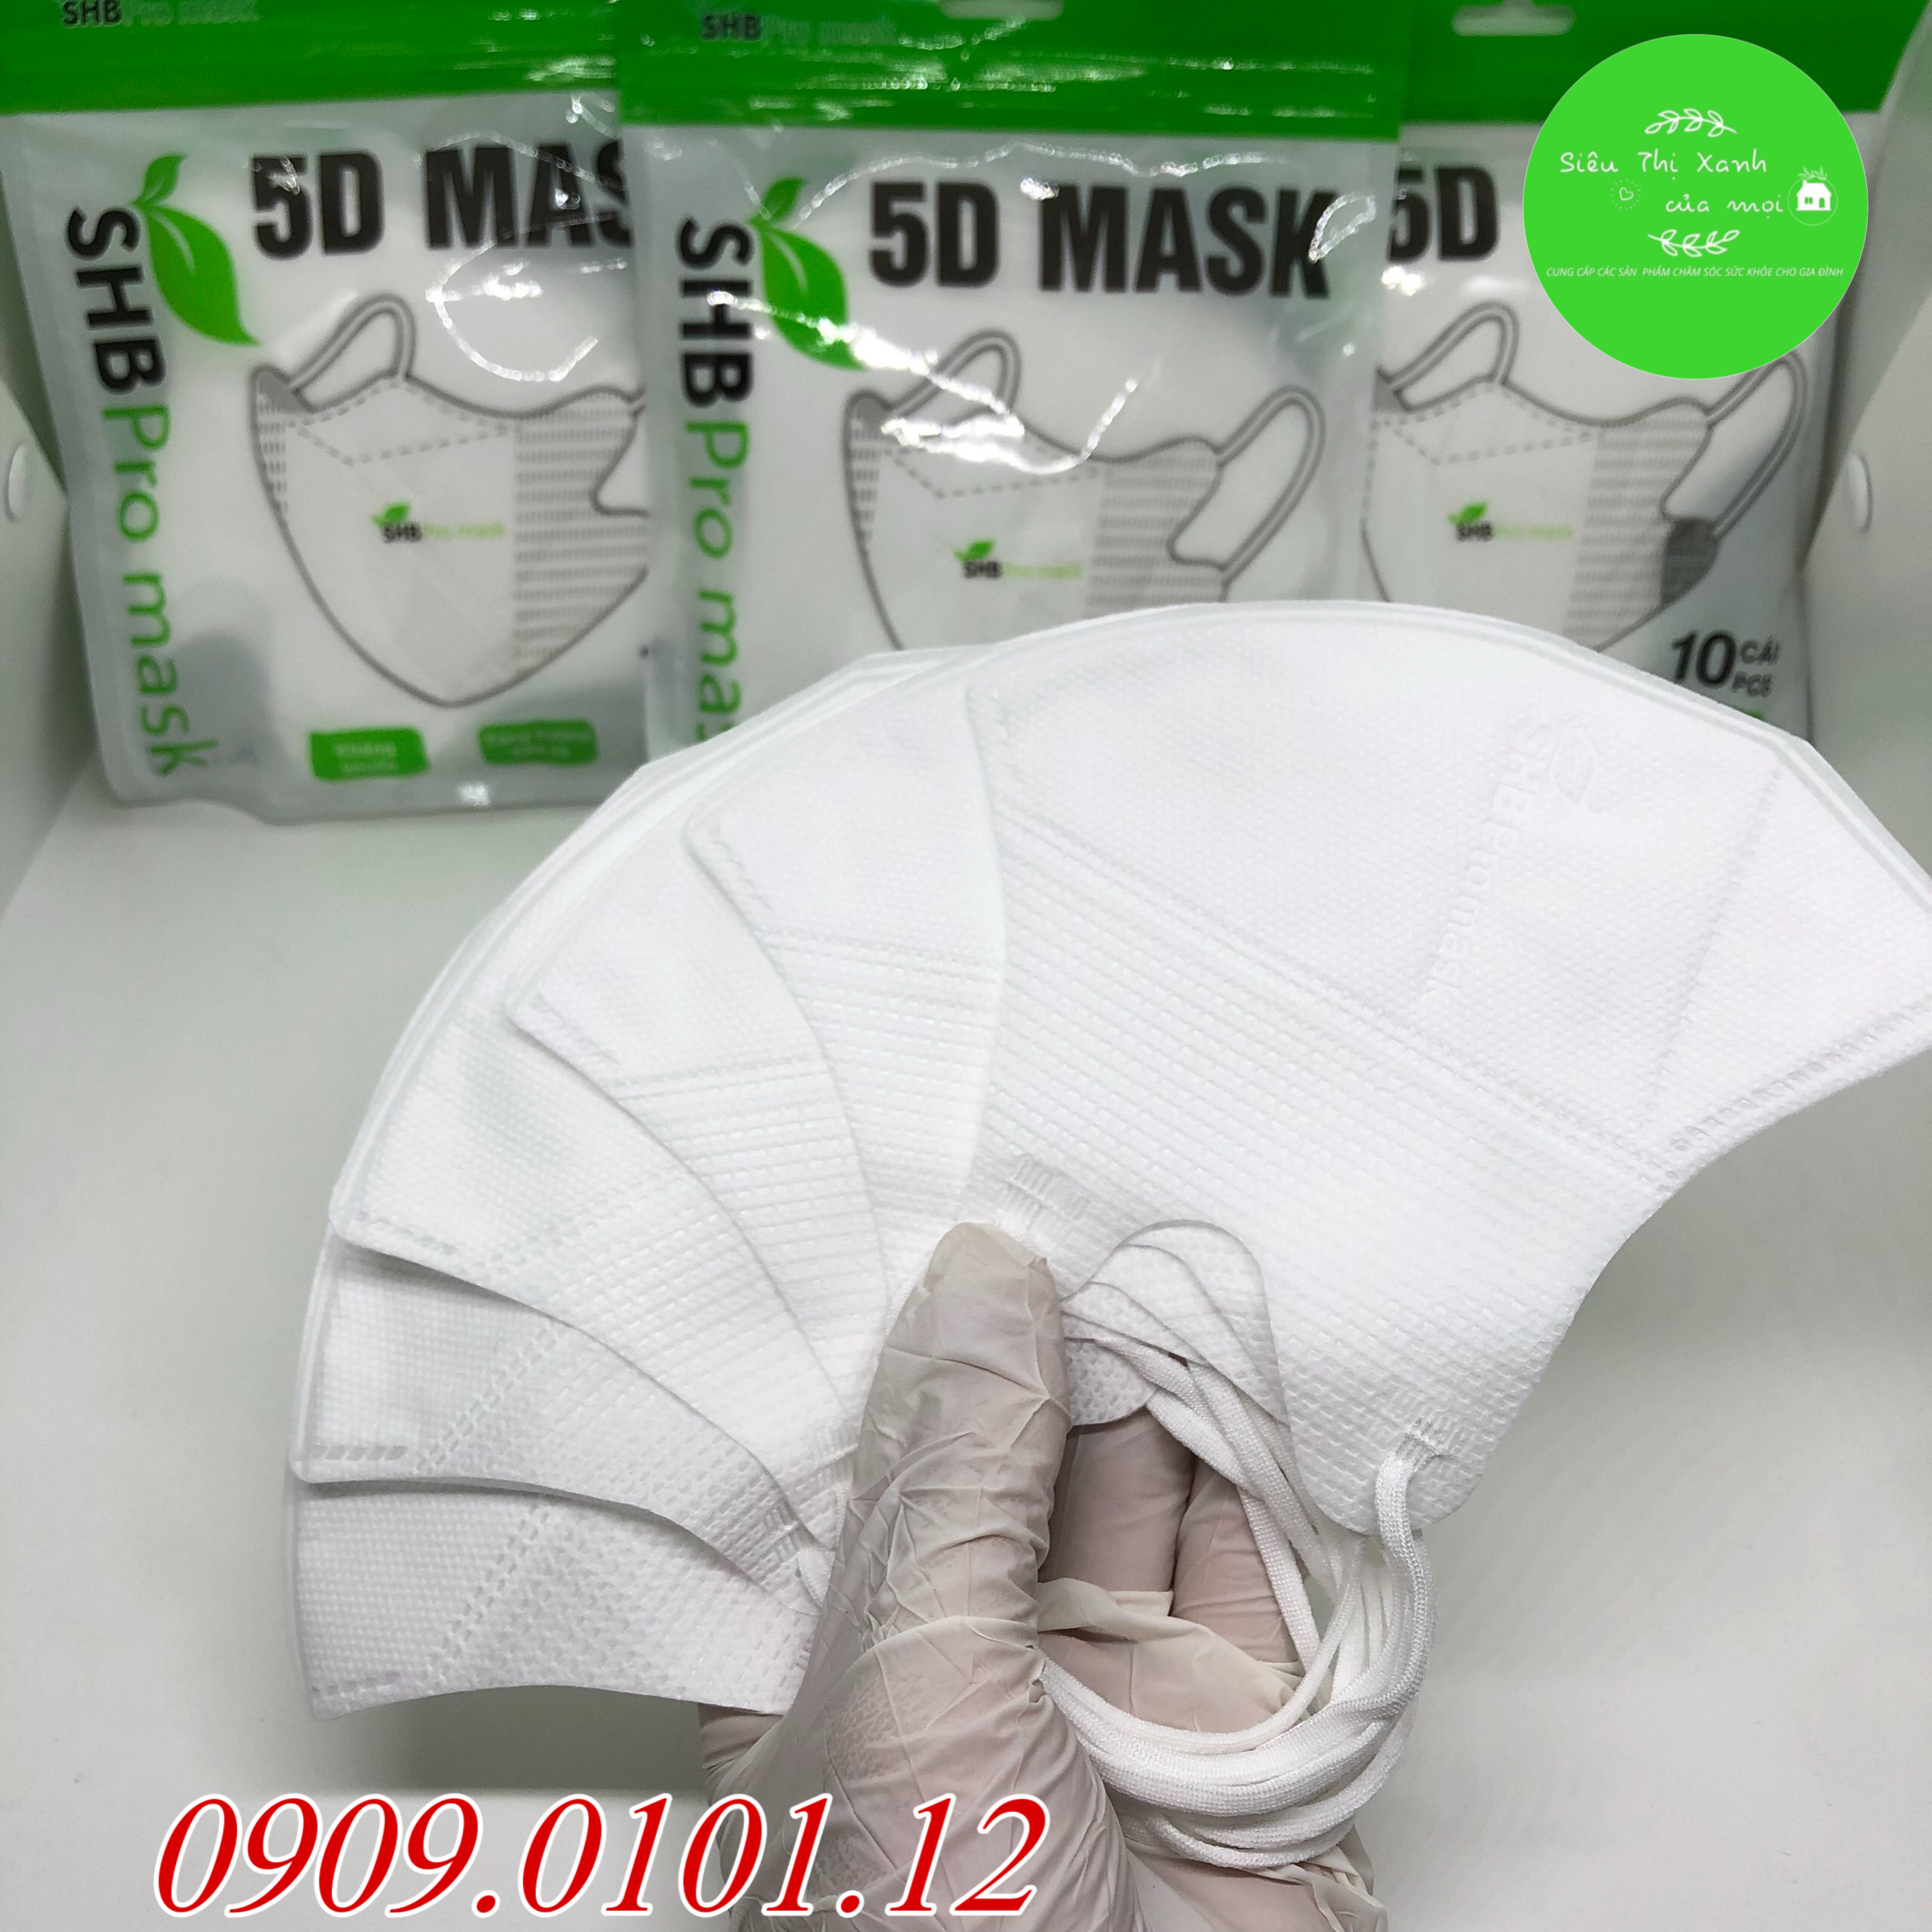 Thùng khẩu trang 5d SHB pro mask nguyên thùng, 5d mask hàn quốc cao cấp